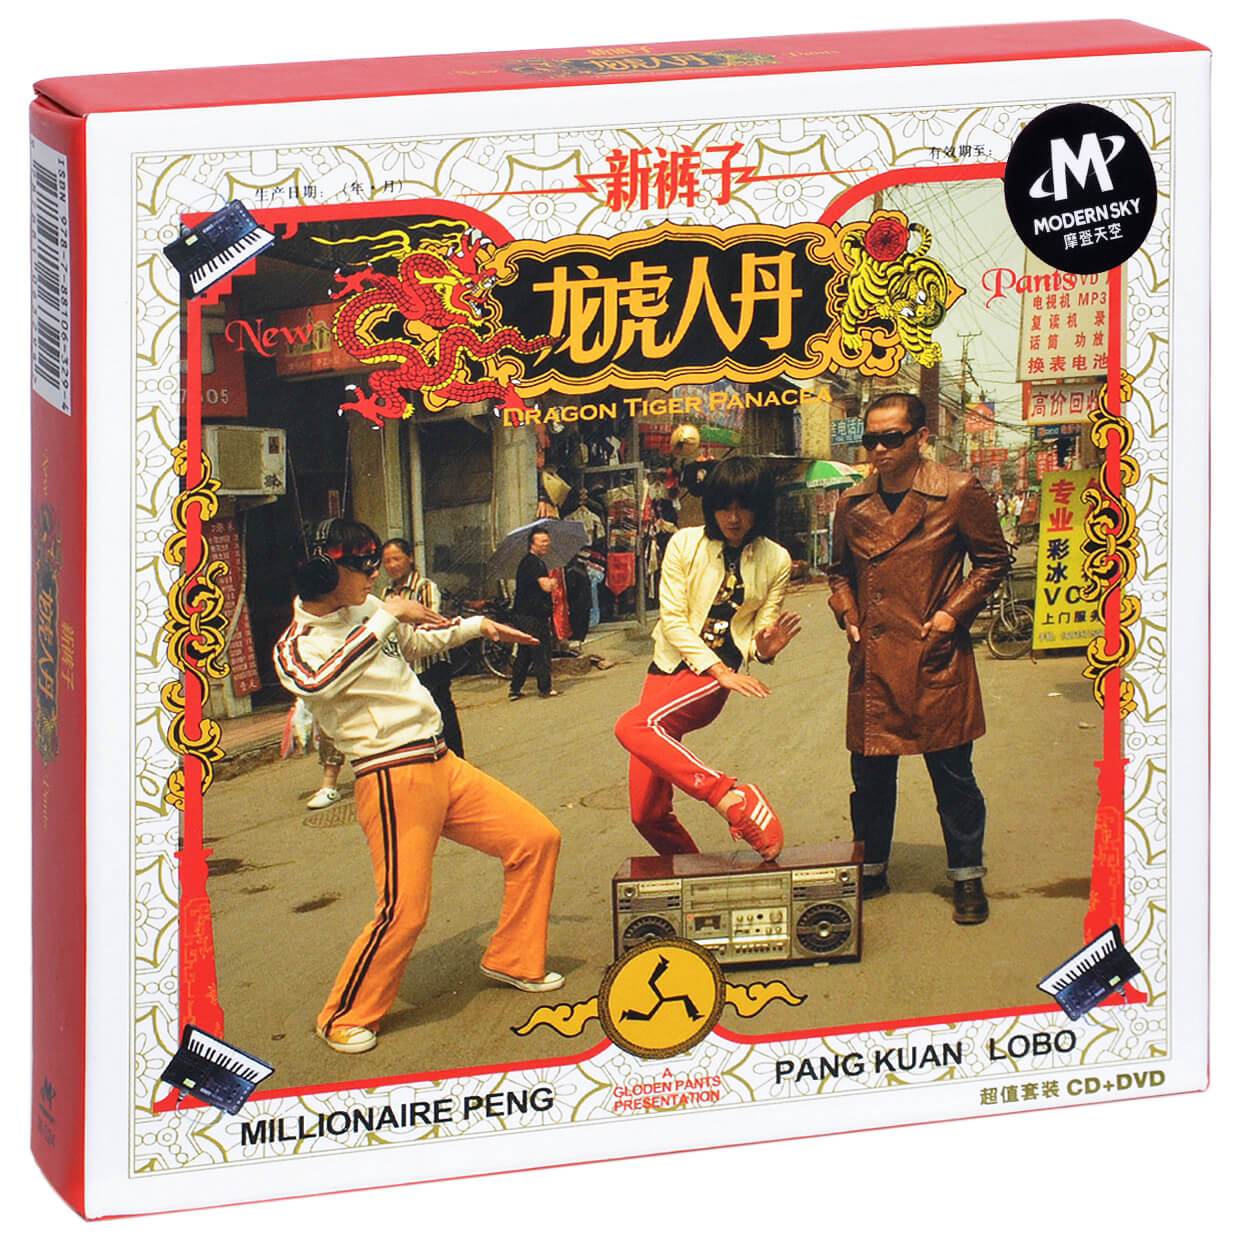 正版新裤子乐队龙虎人丹2006专辑摩登天空唱片cd